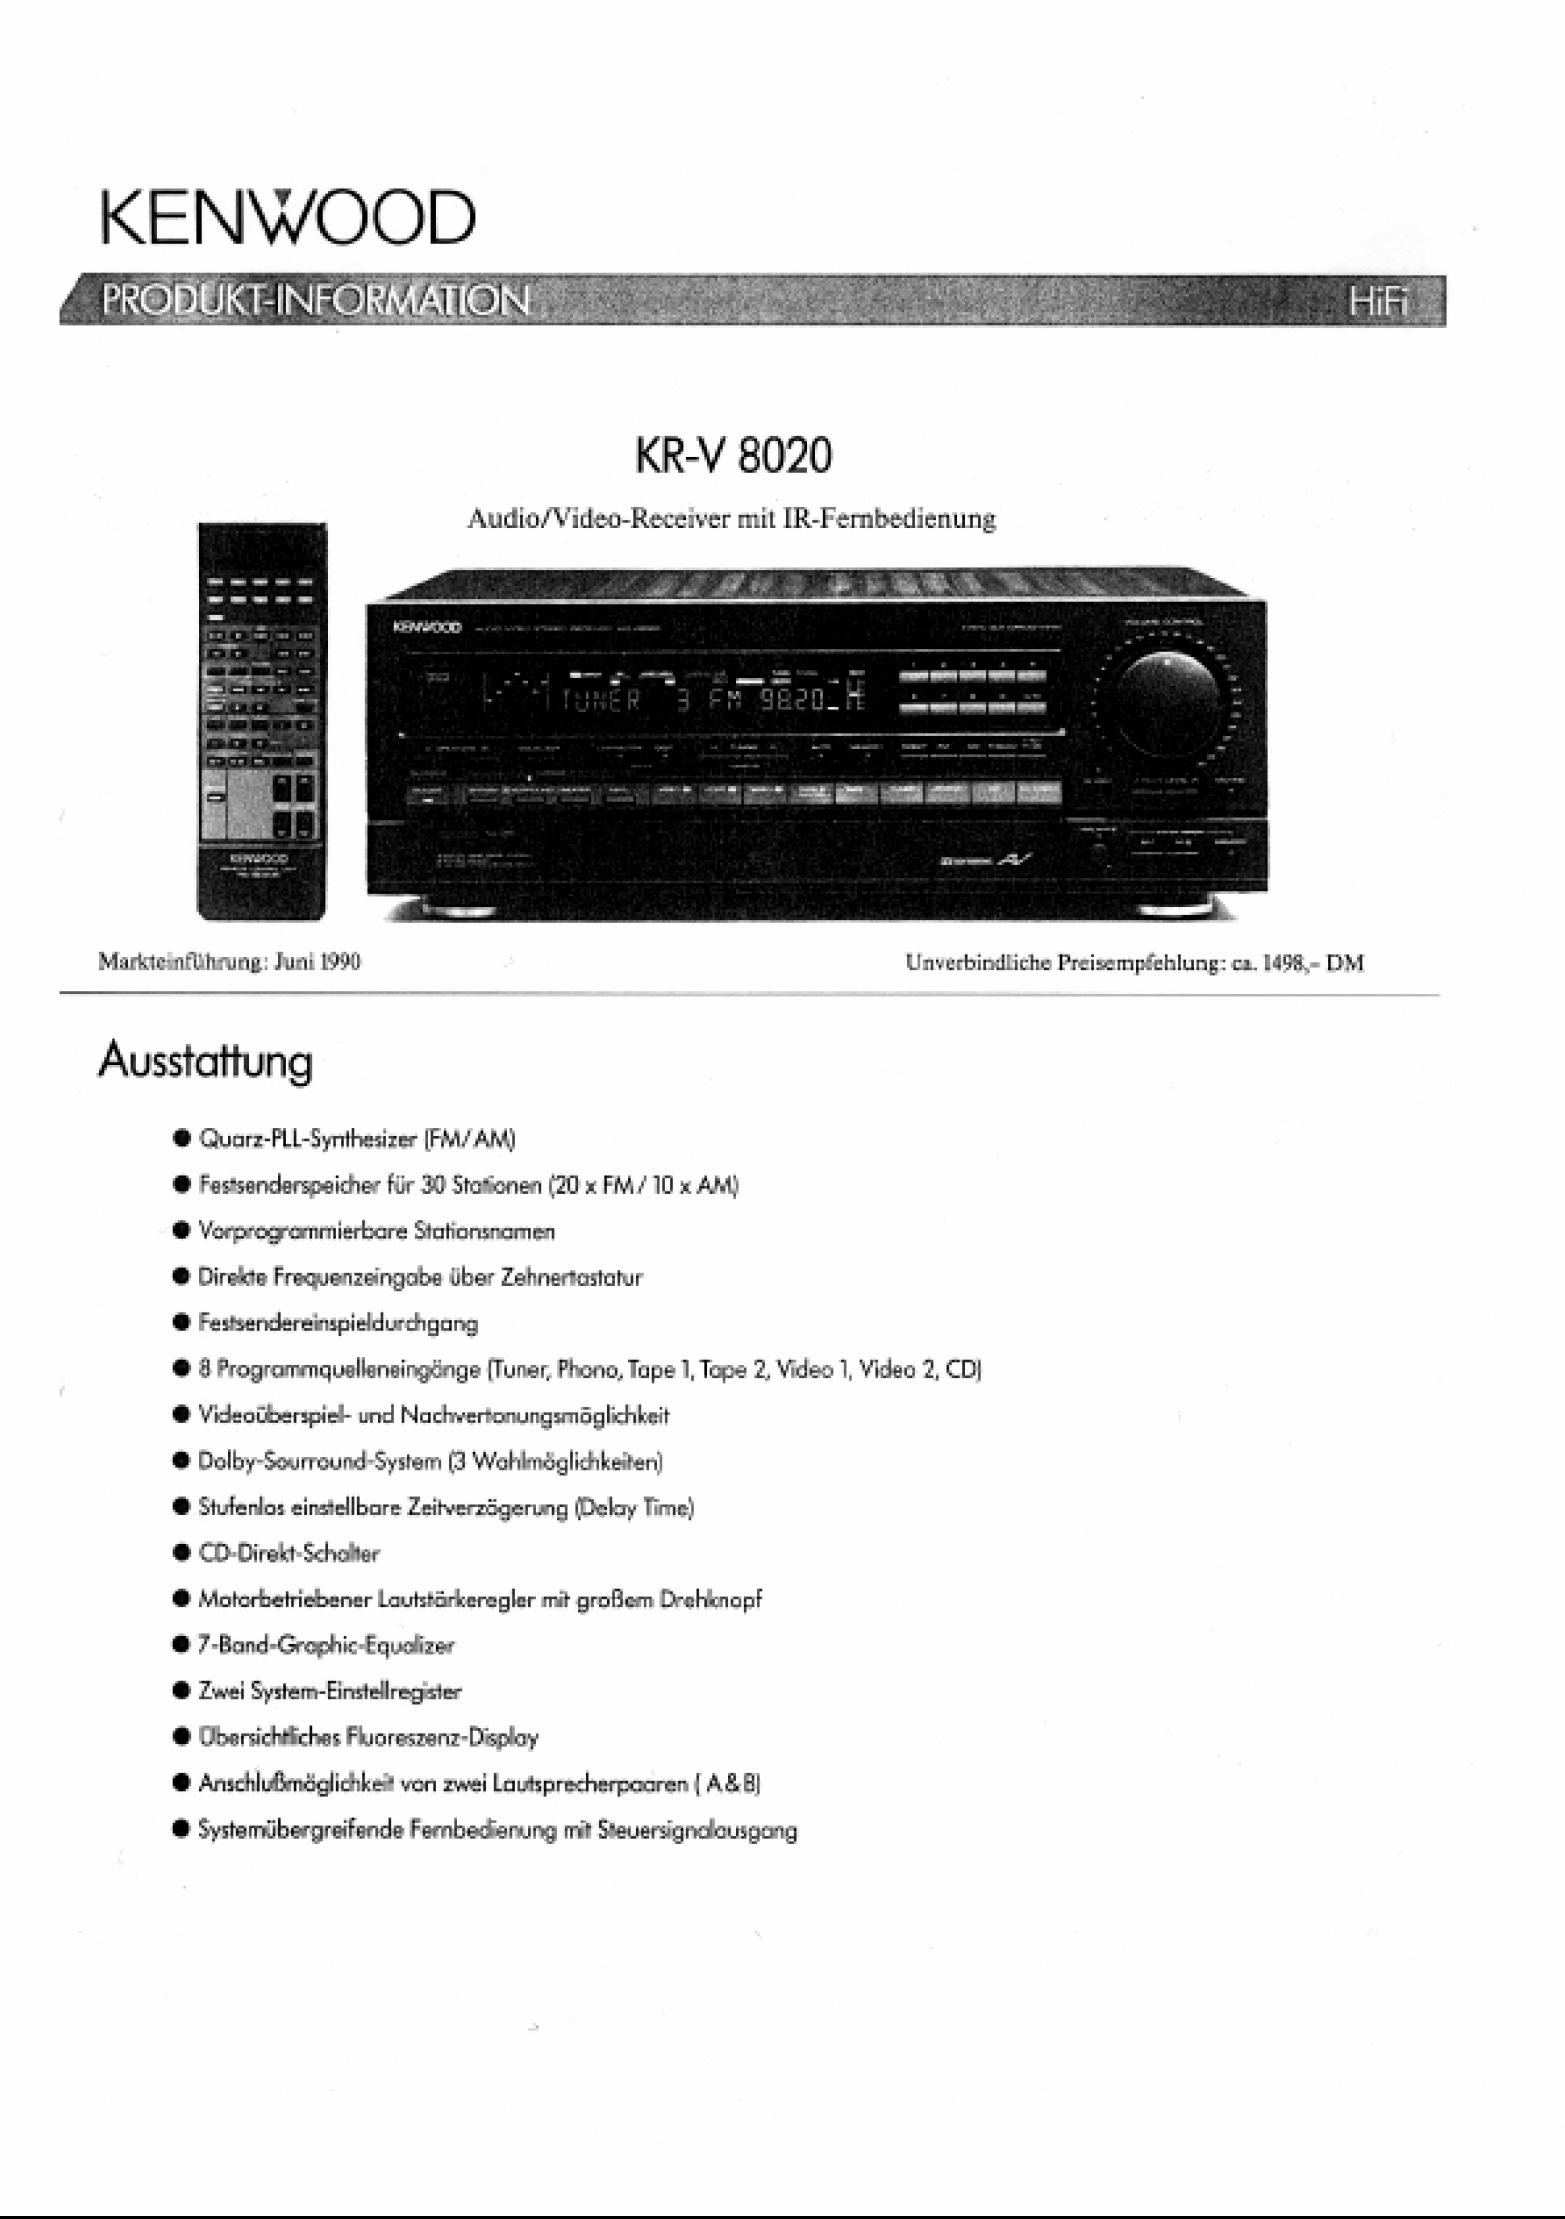 Kenwood KR-V 8020-Prospekt-1990.jpg